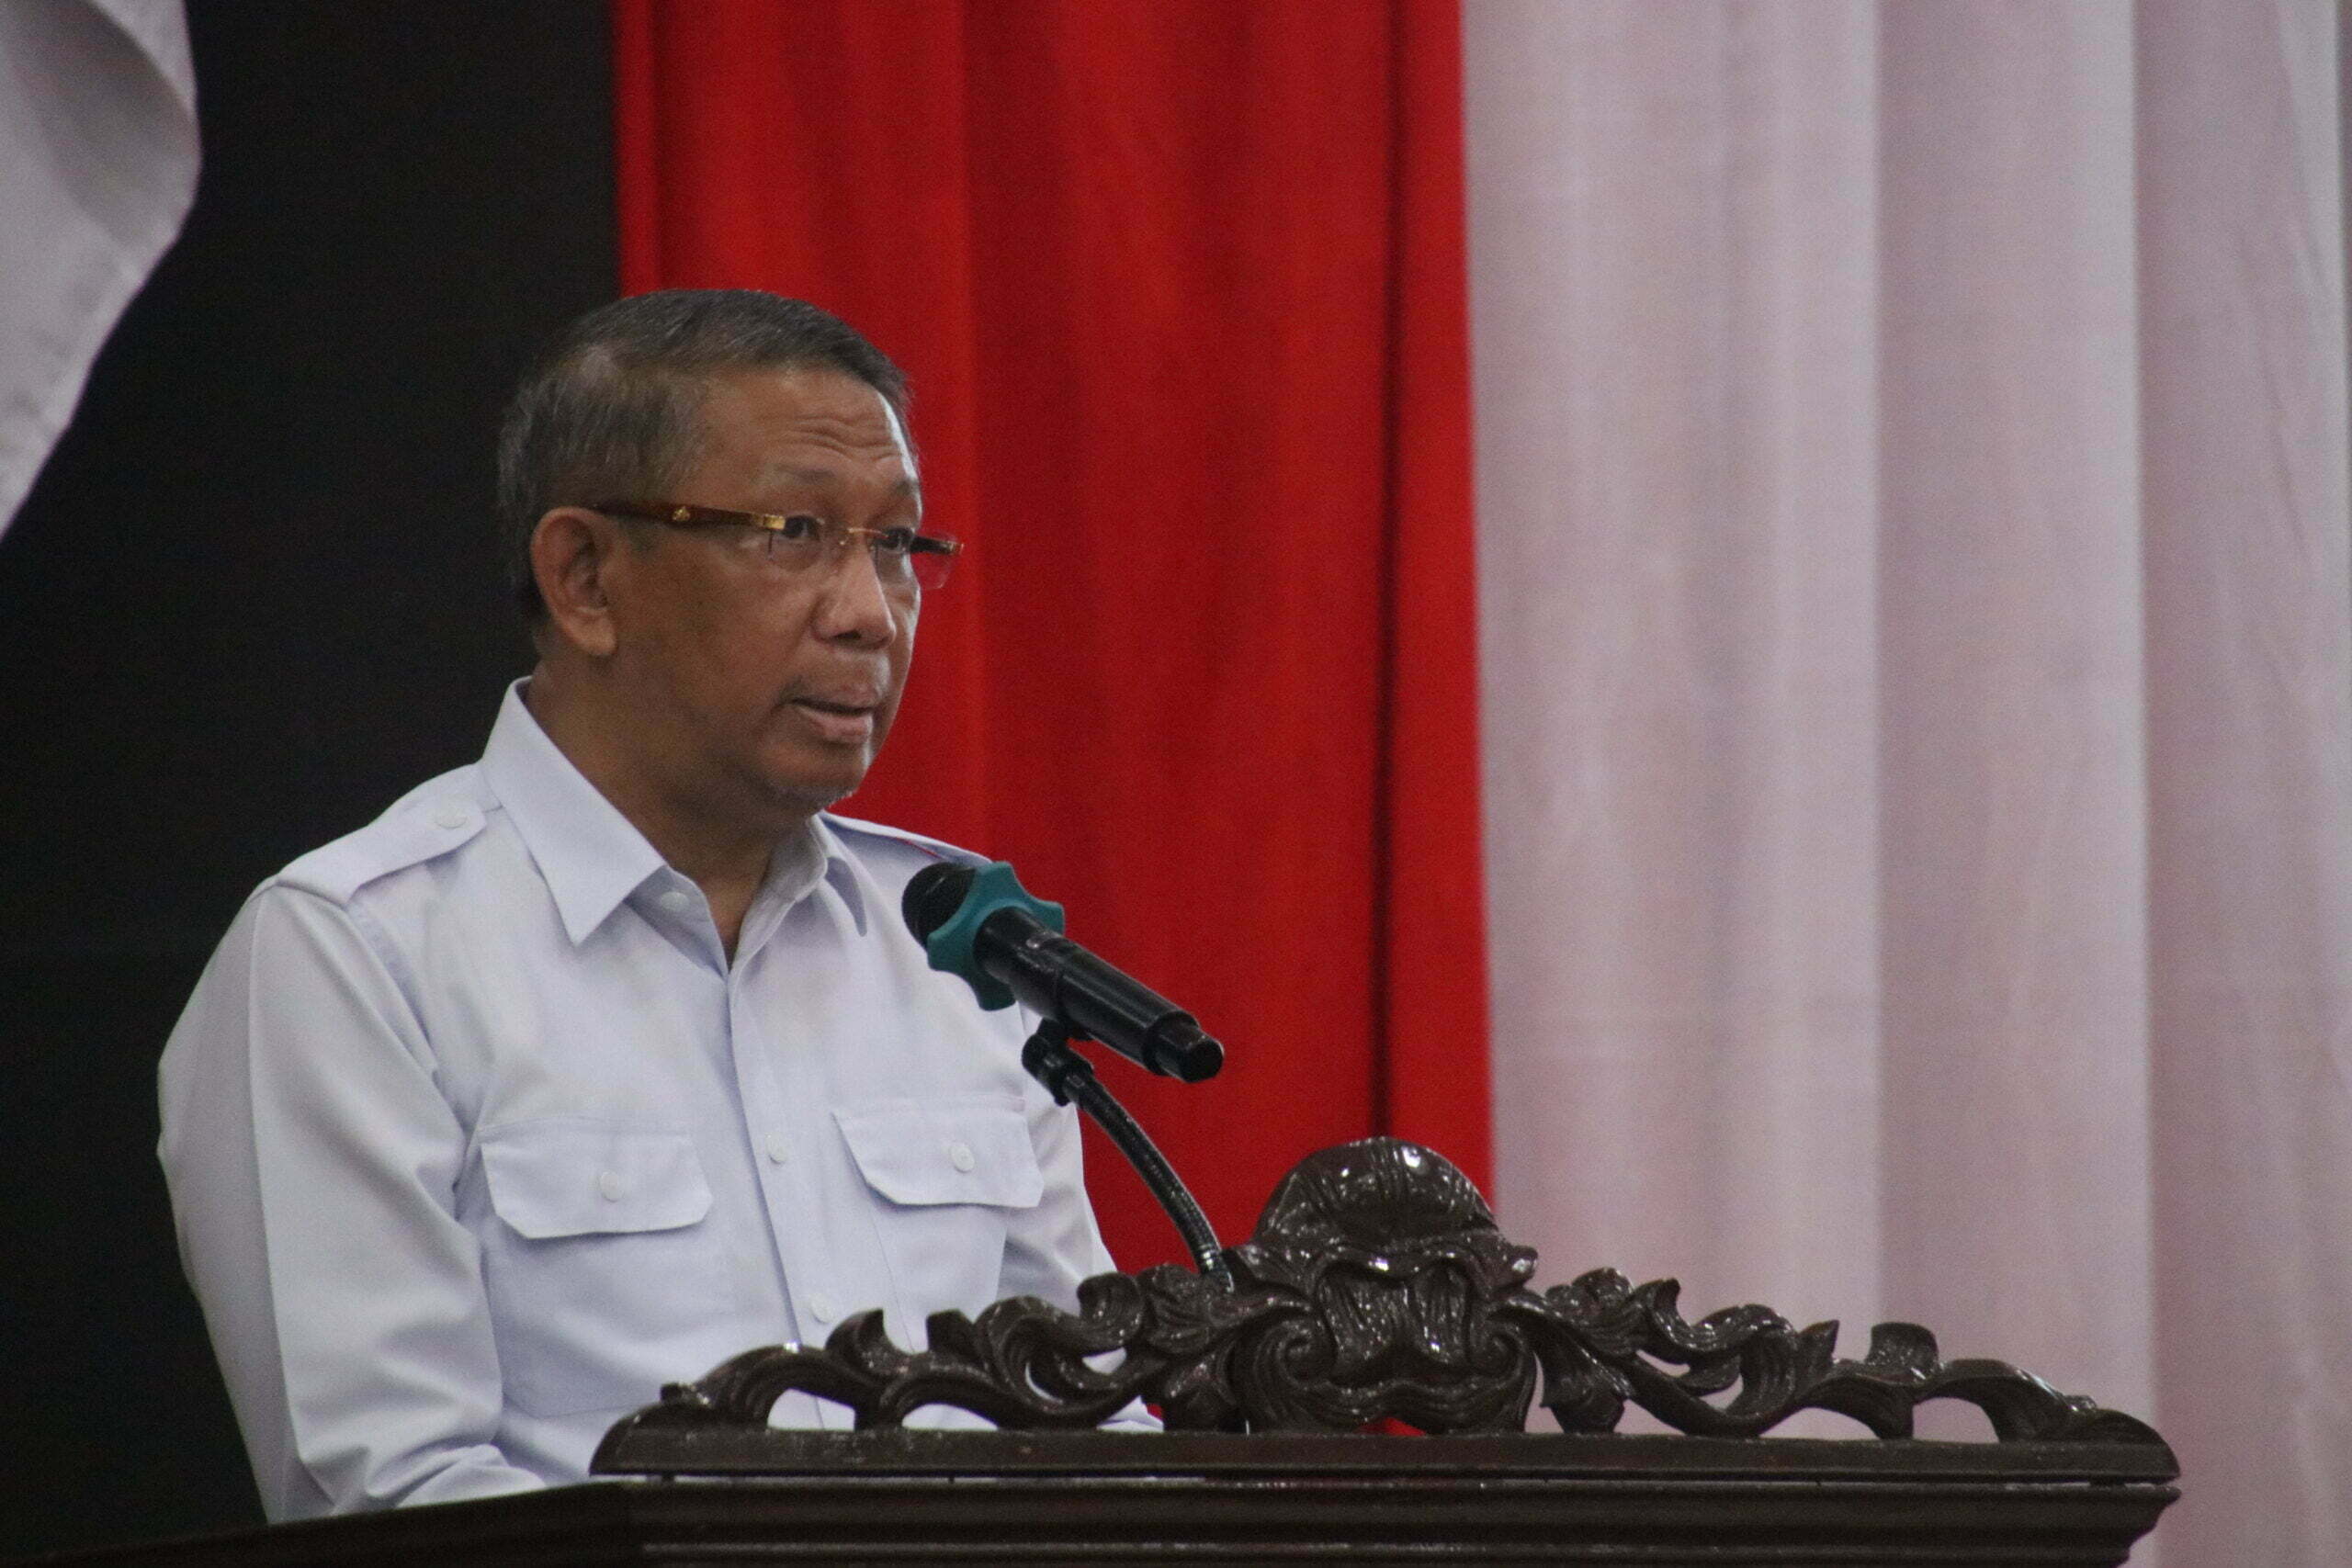 Gubernur Kalbar, Sutarmidji memberikan kata sambutan pada acara serah terima Penetapan Status Penggunaan (PSP) dan hibah barang rampasan negara di Kota Singkawang. (Foto: Biro Adpim For KalbarOnline.com)